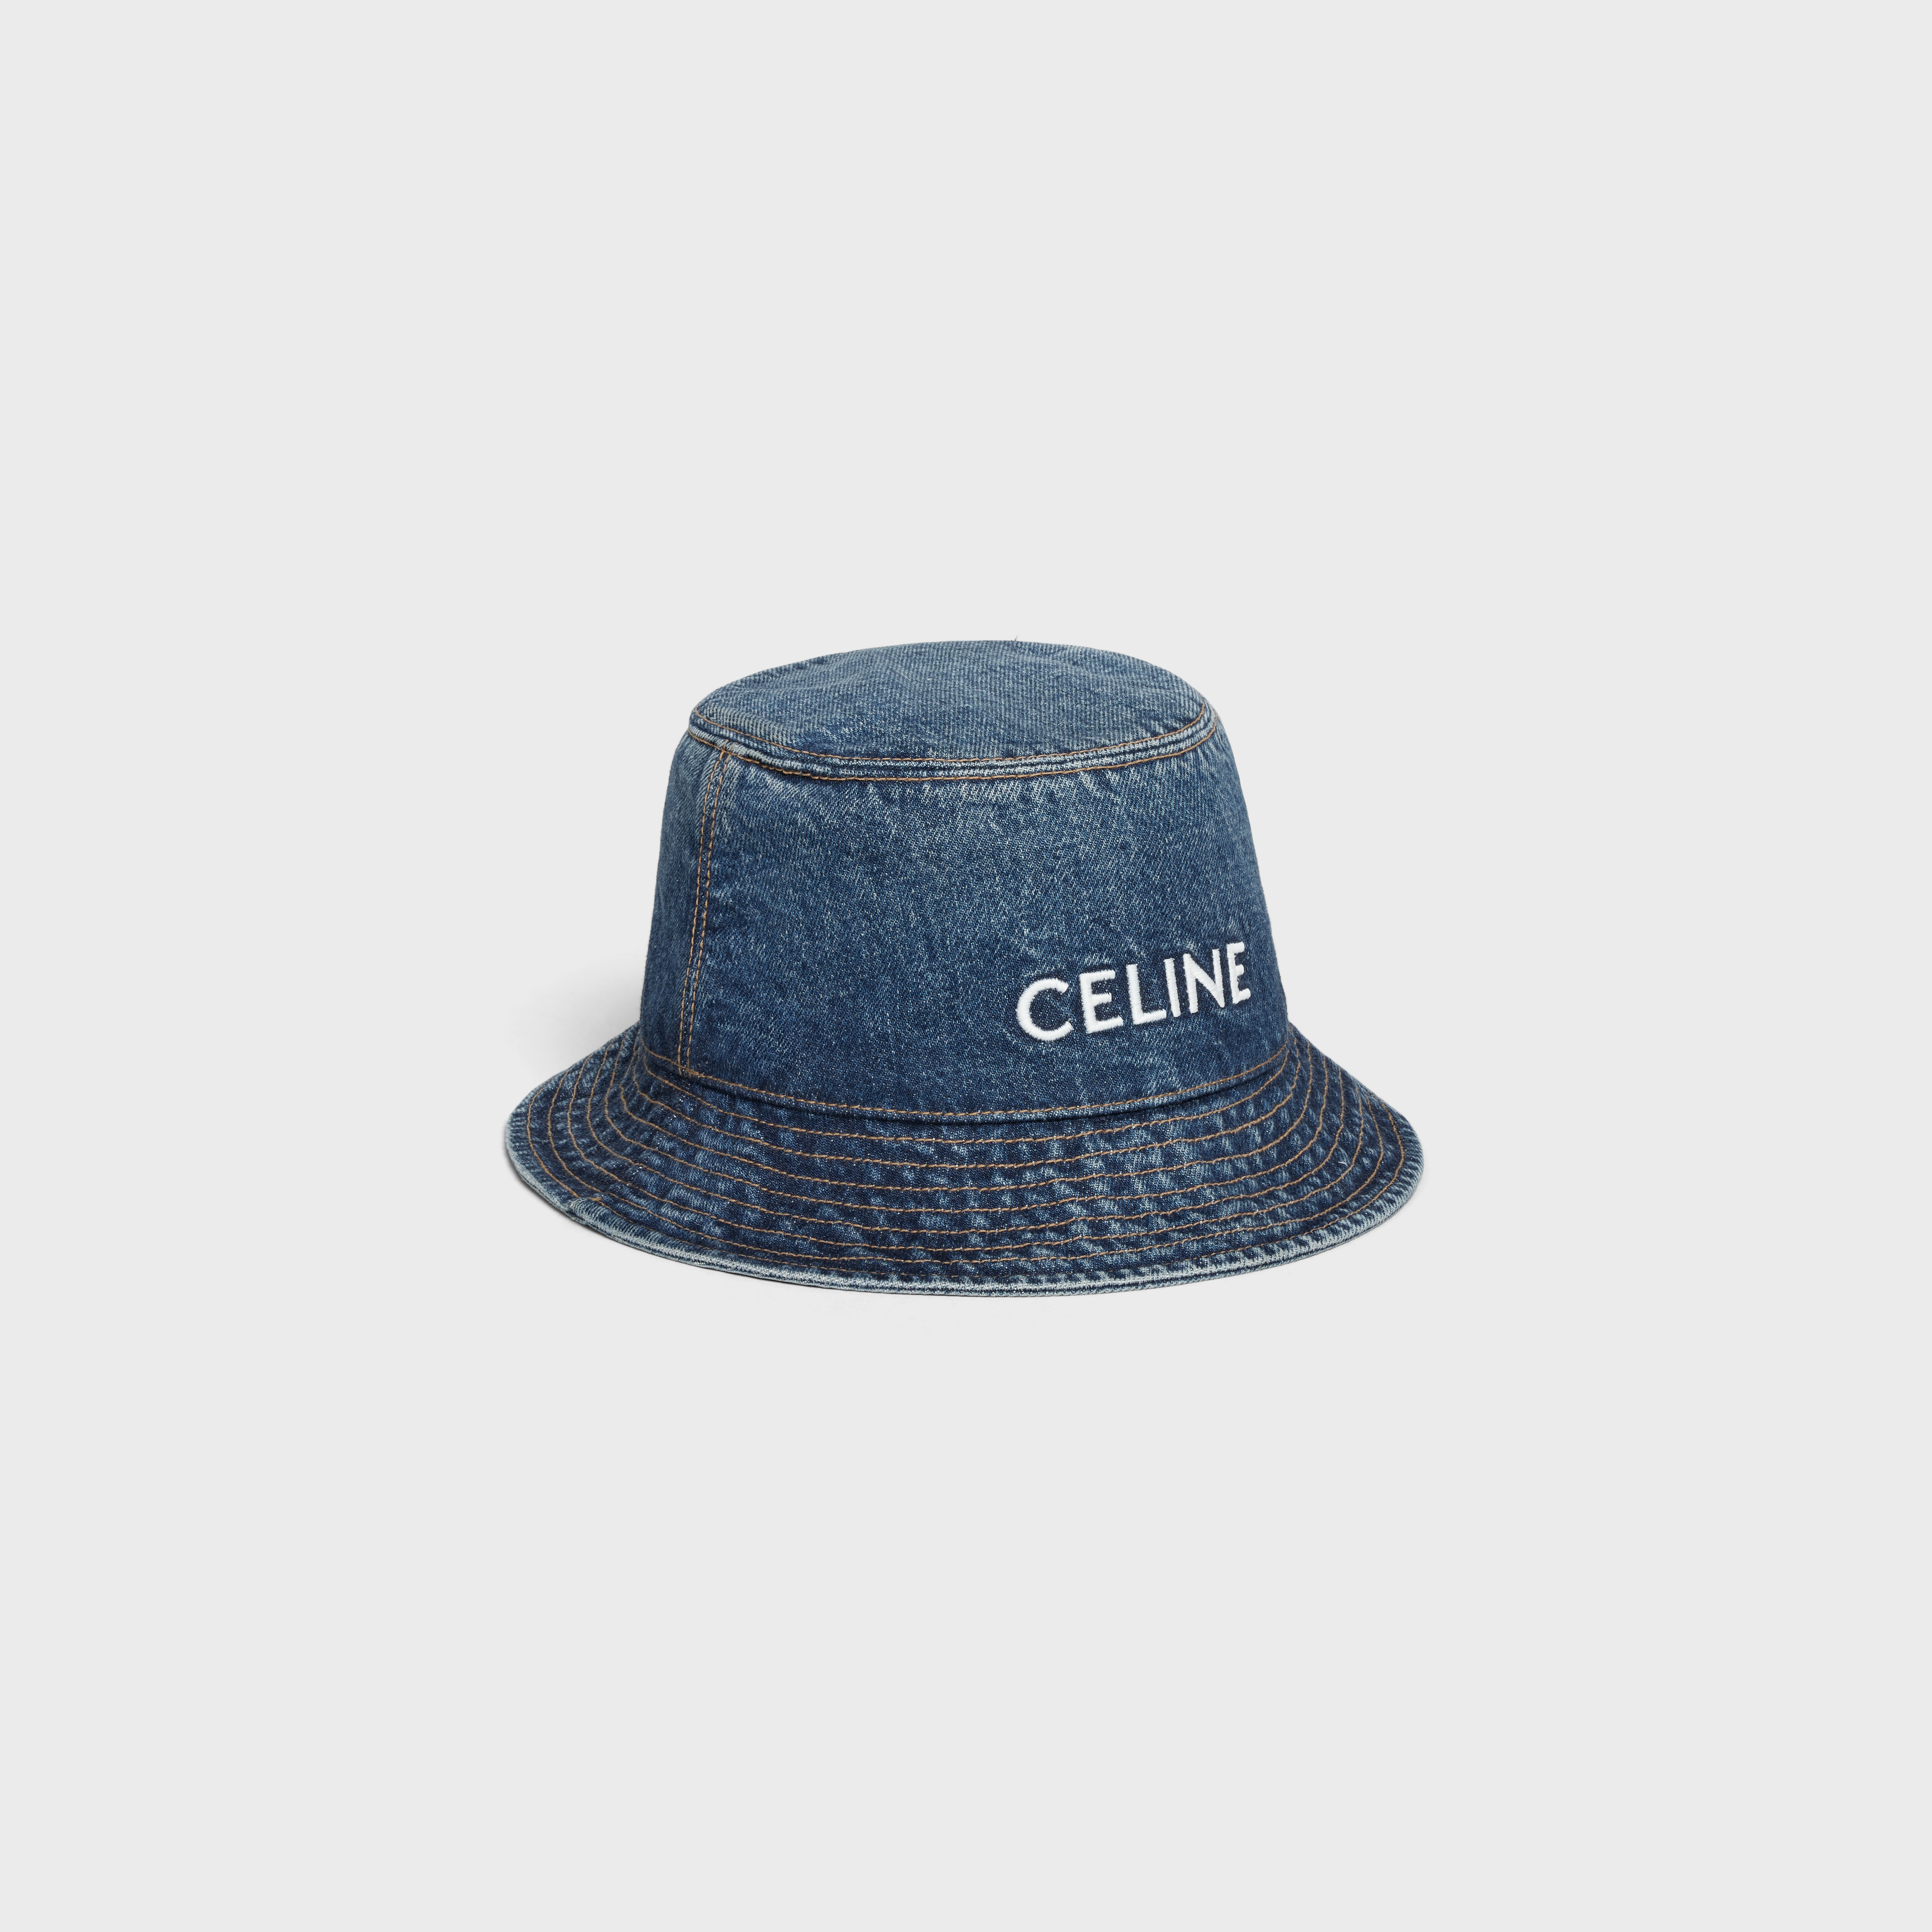 Celine embroidered union wash denim bucket hat - 2